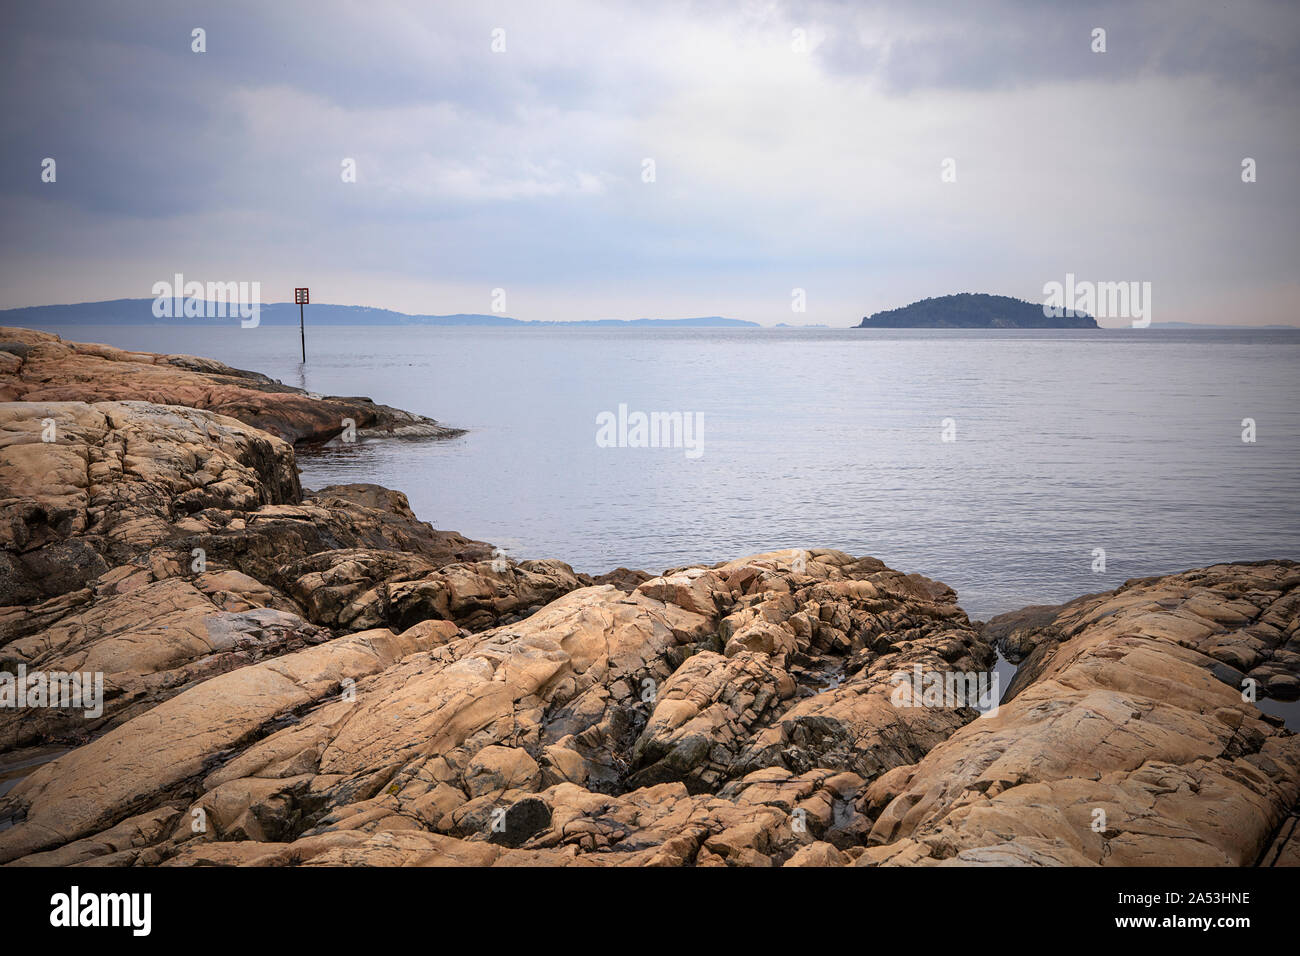 Vue sur le fjord d'Oslo, l'eau calme, visibles de l'île. Paysage avec des rochers sur la plage. Côte norvégienne en été. Nesodden la Norvège. Nesoddtangen péninsule. Banque D'Images